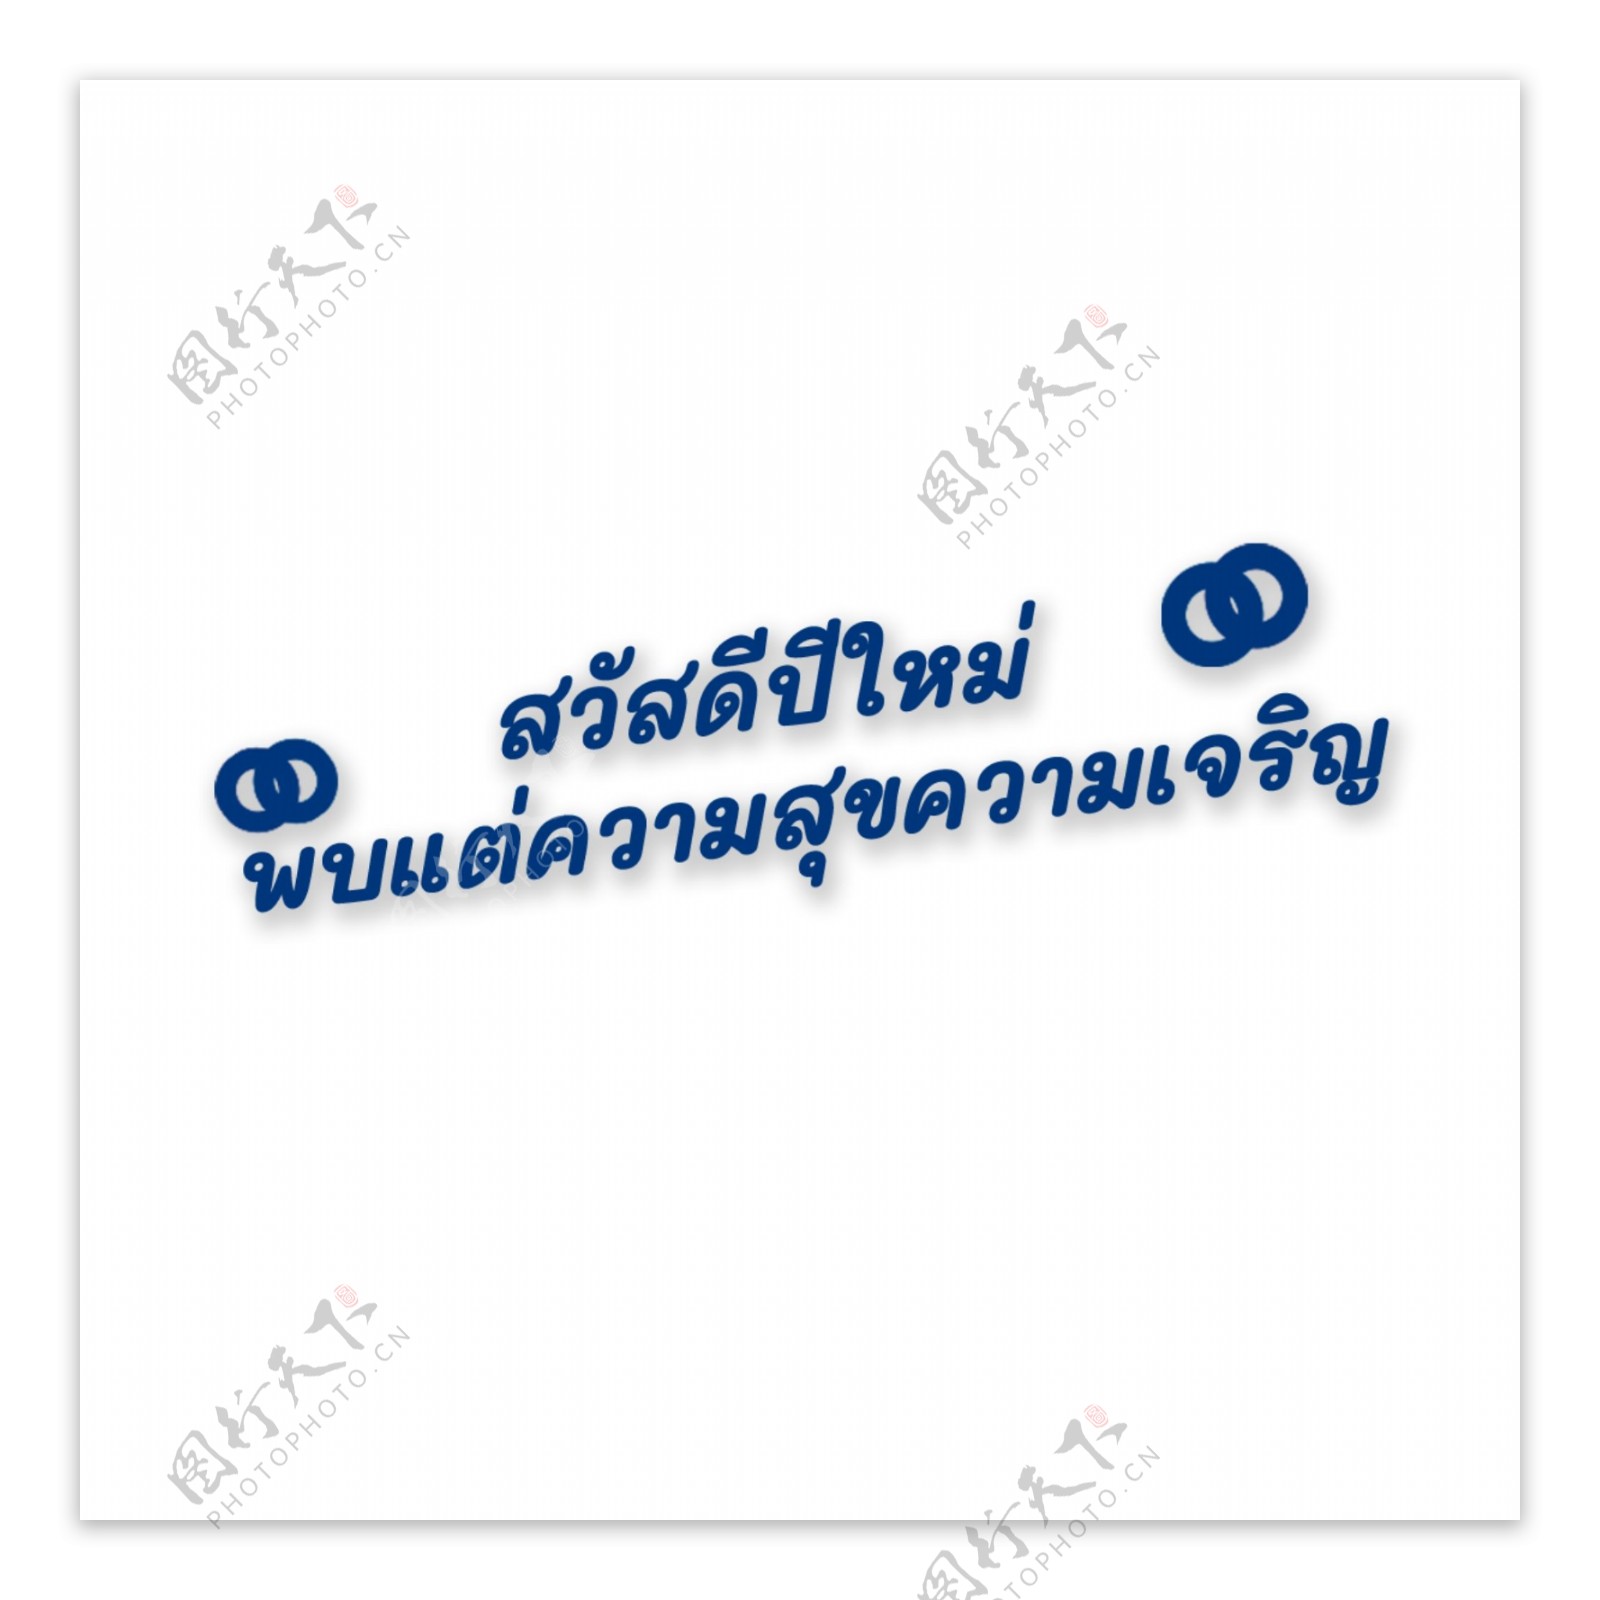 深蓝色字体字体显示泰国新年快乐幸福